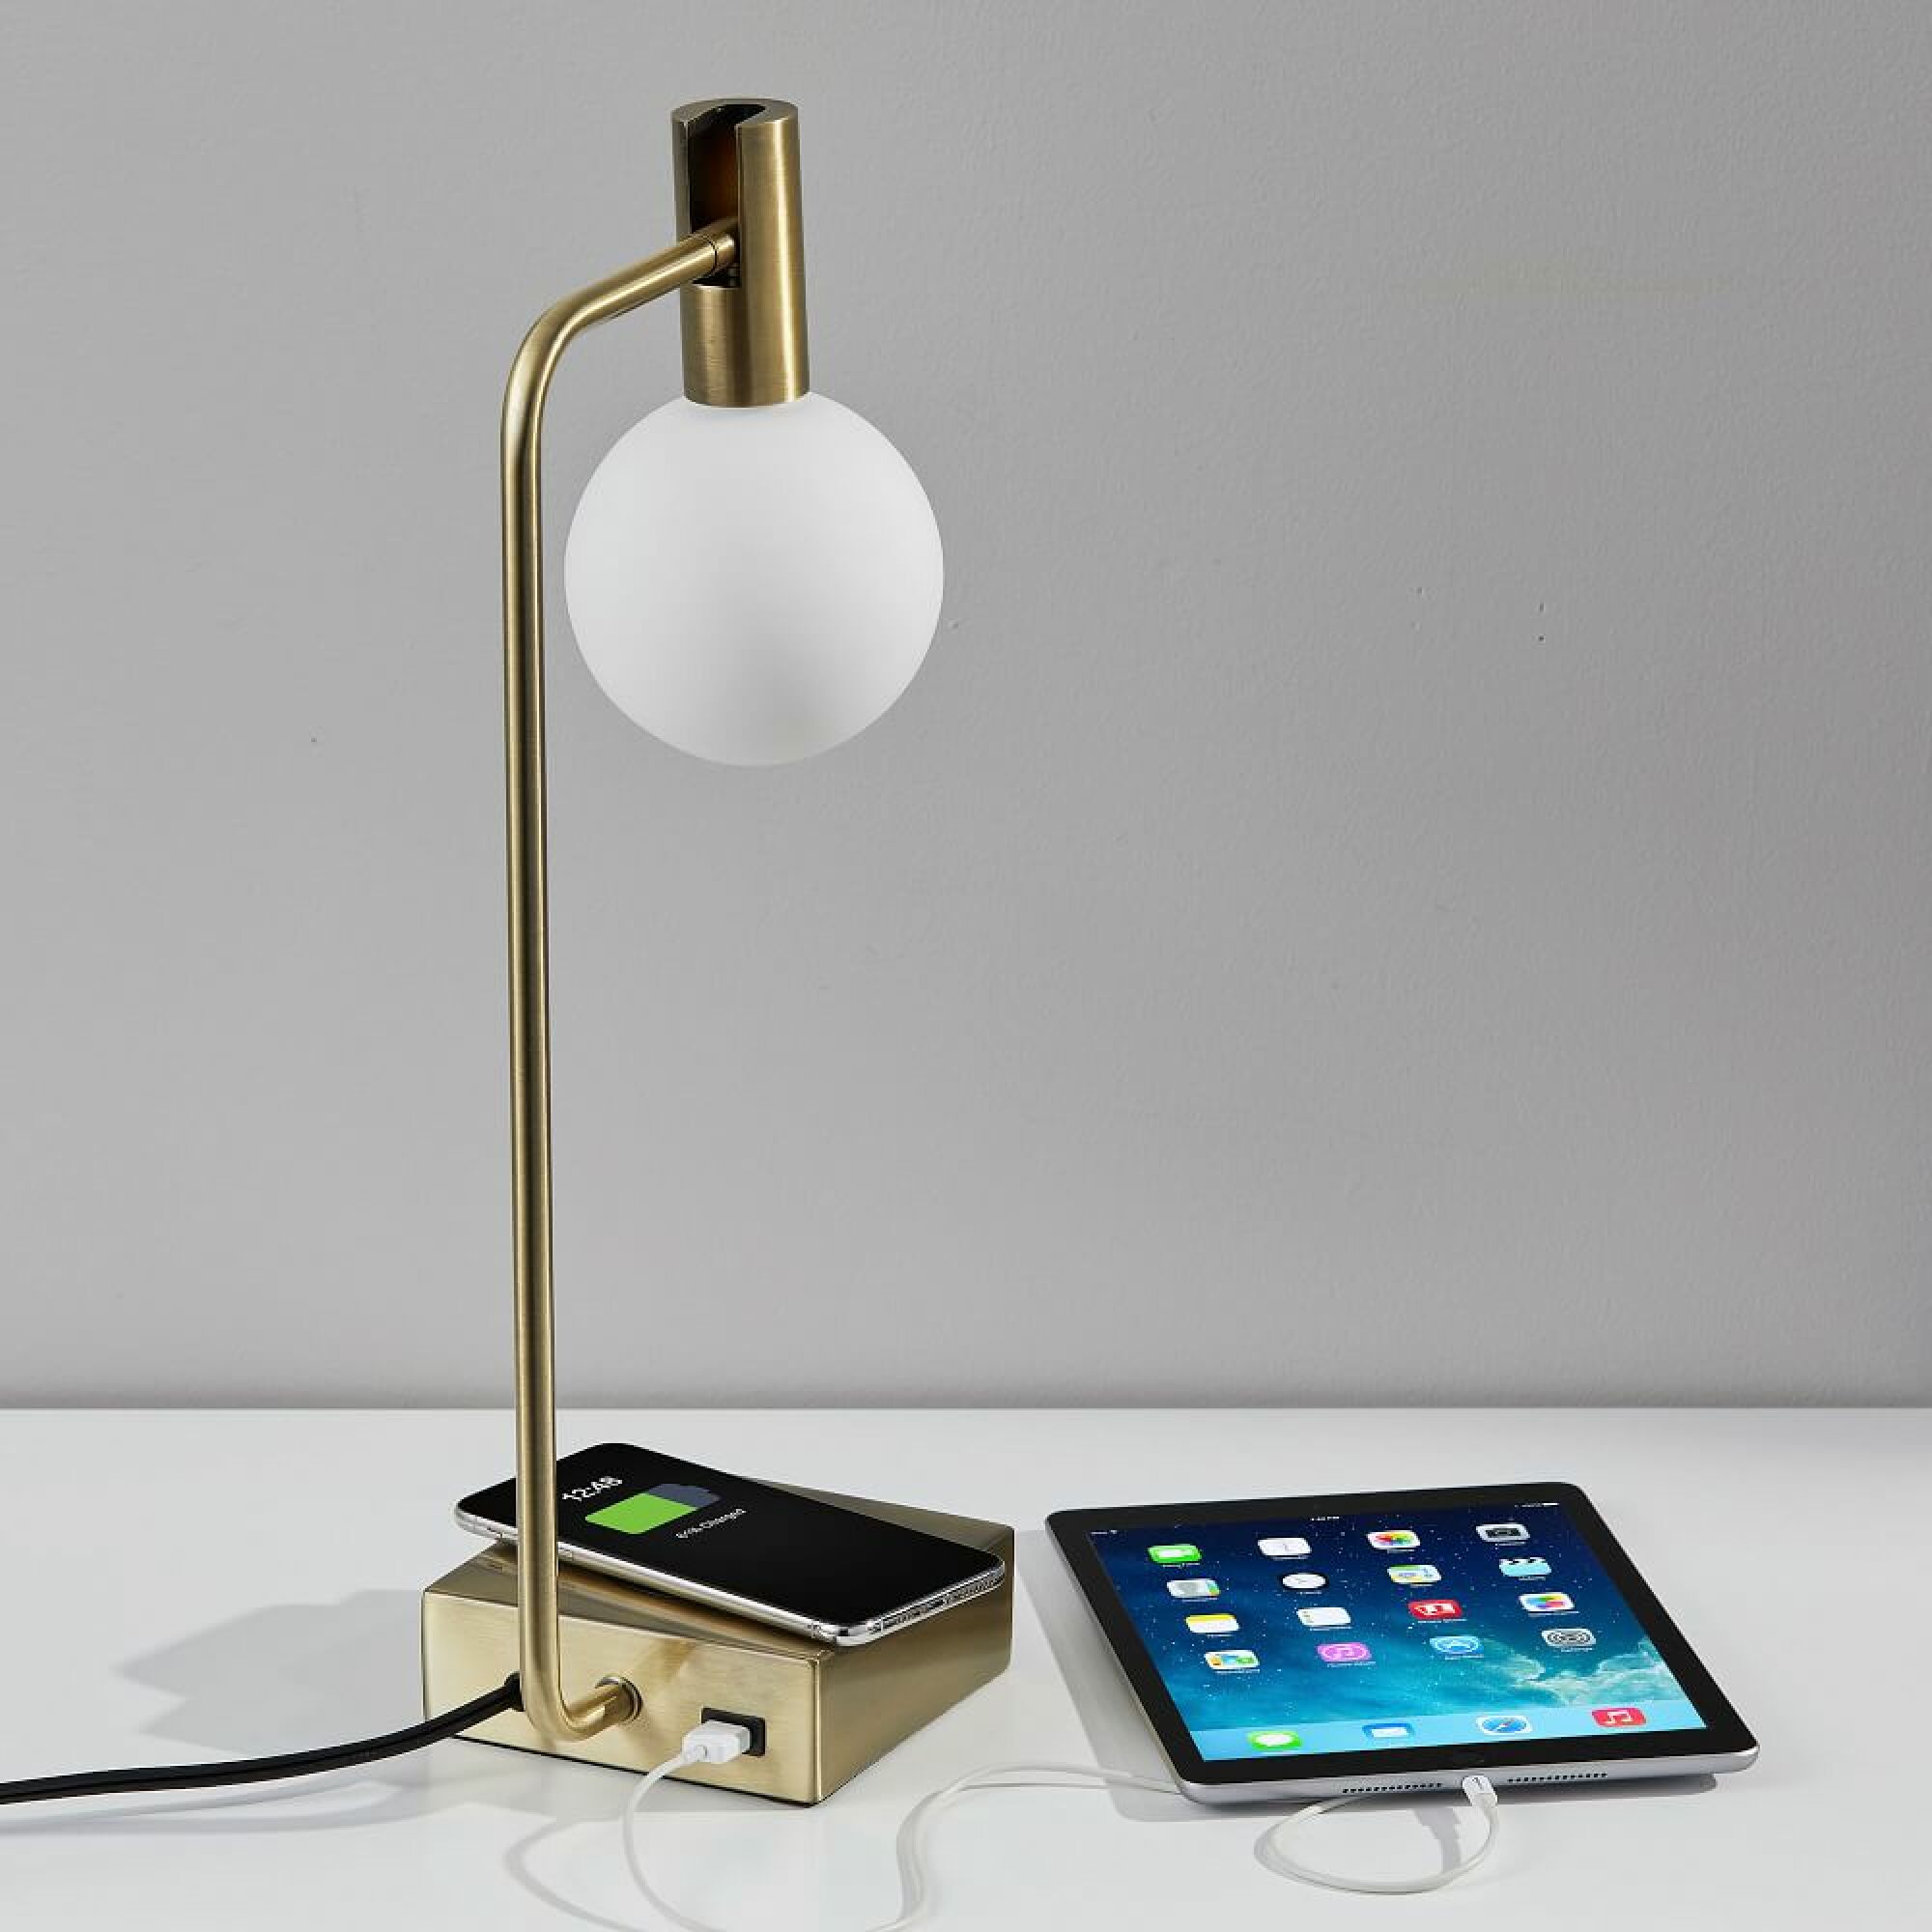 Lampe en laiton West Elm avec un smartphone en charge sur son socle et un ipad branché sur son port USB.